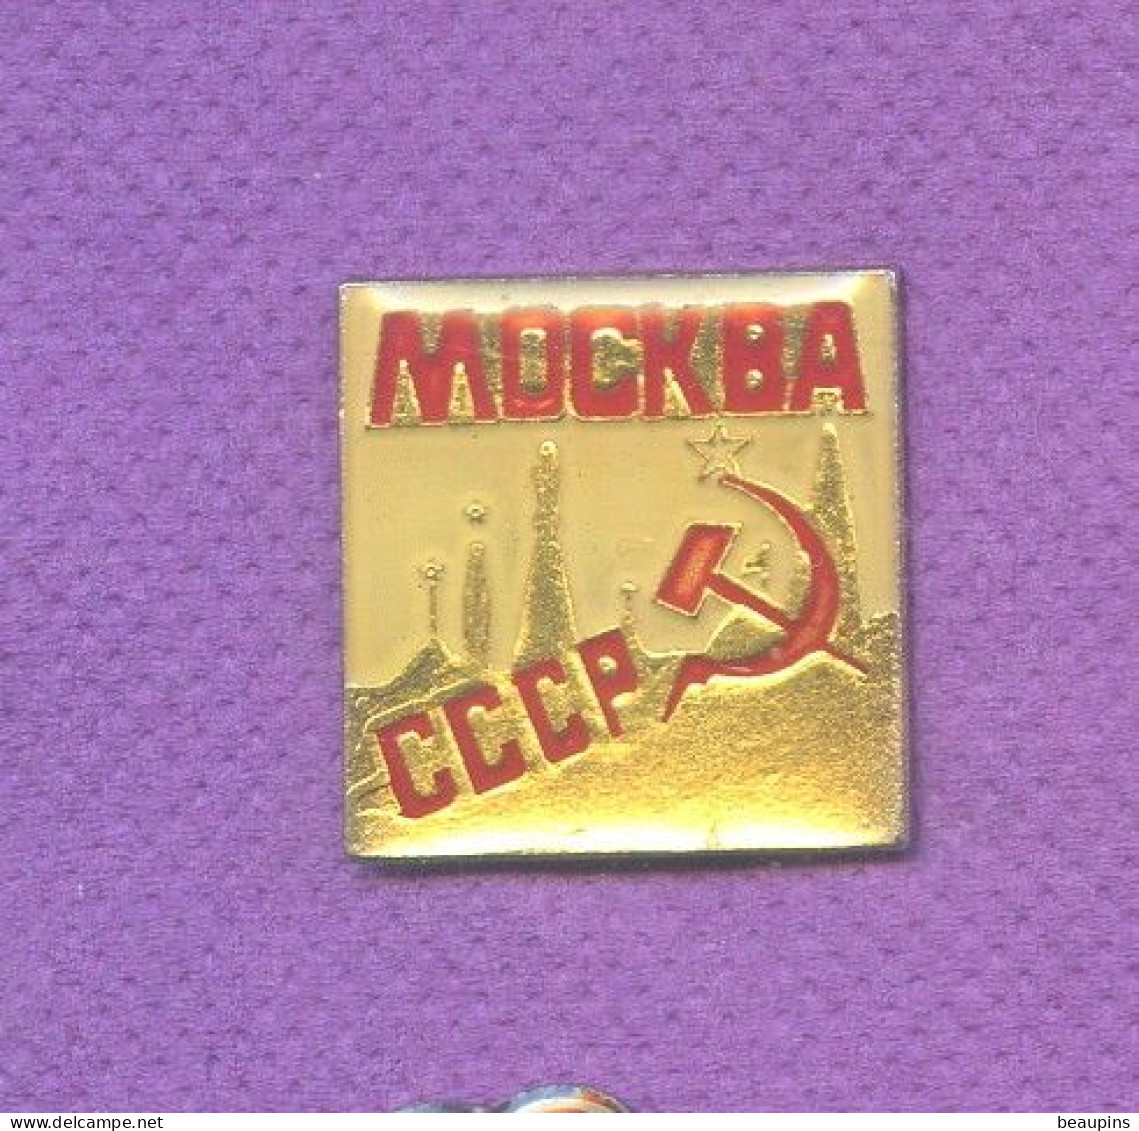 Rare Pins Russie Urss Cccp Faucille Marteau Politique N329 - Amministrazioni